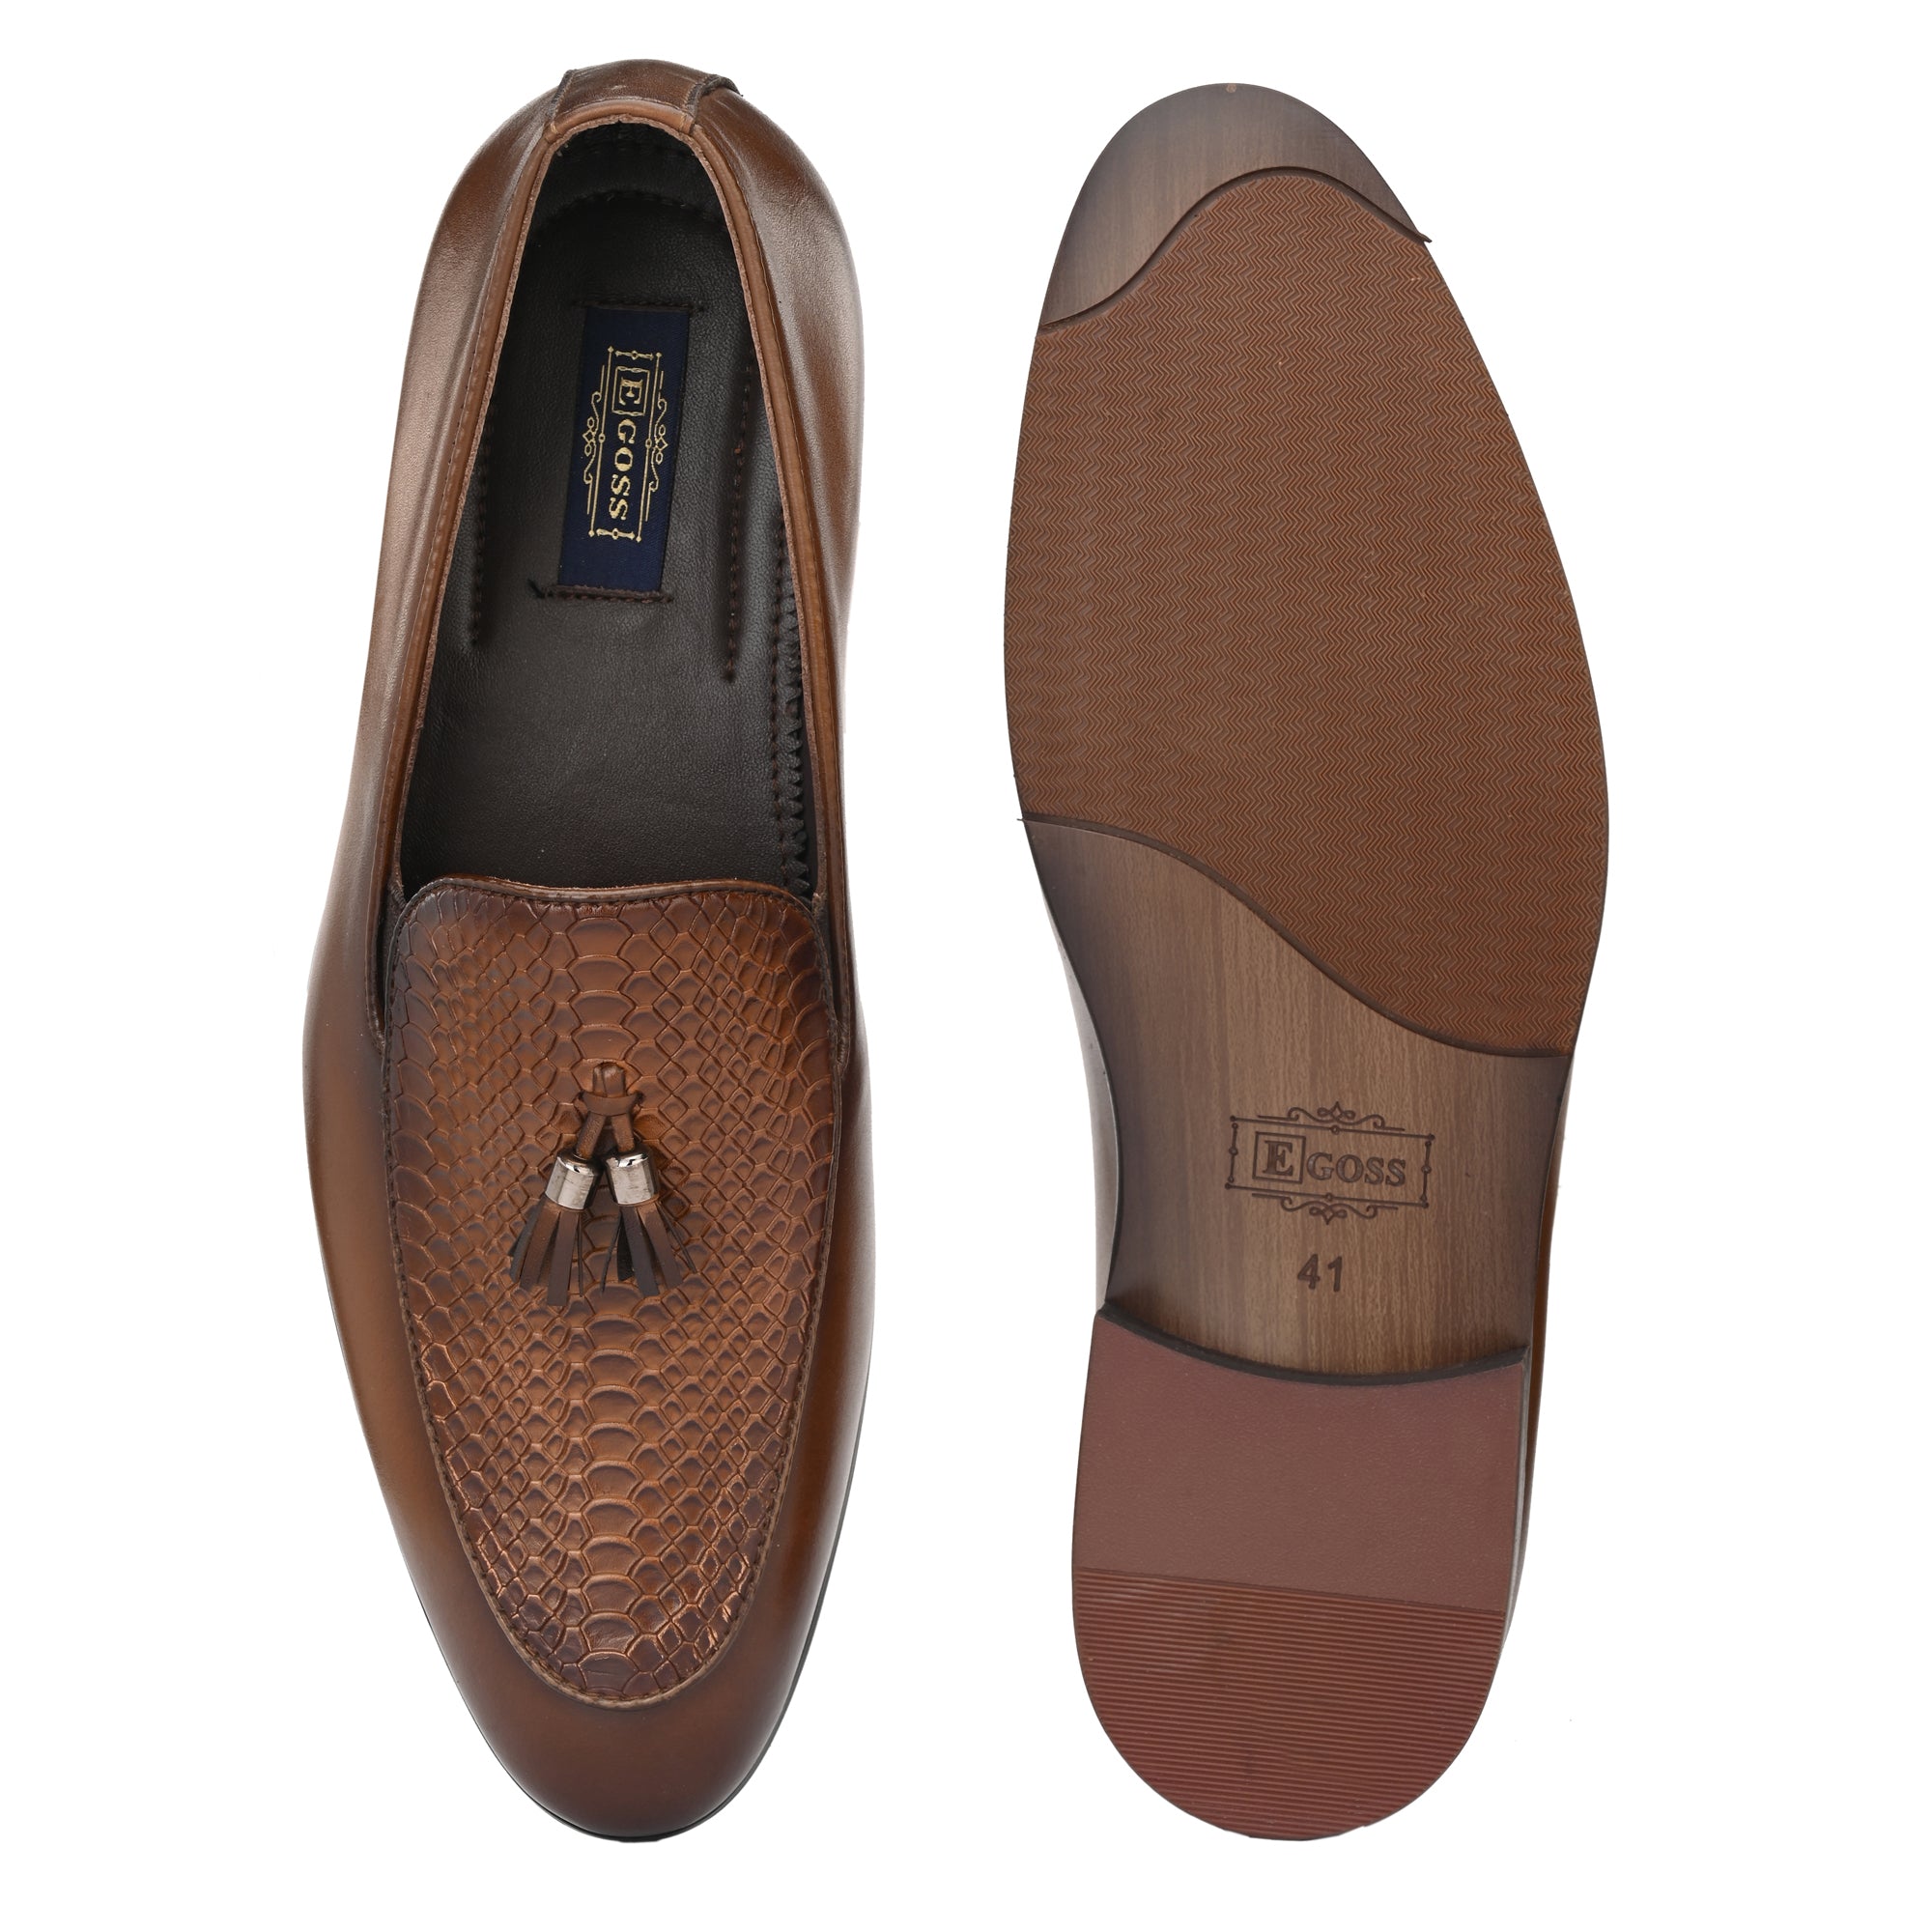 Imprinted Tassel Formal Loafers For Men